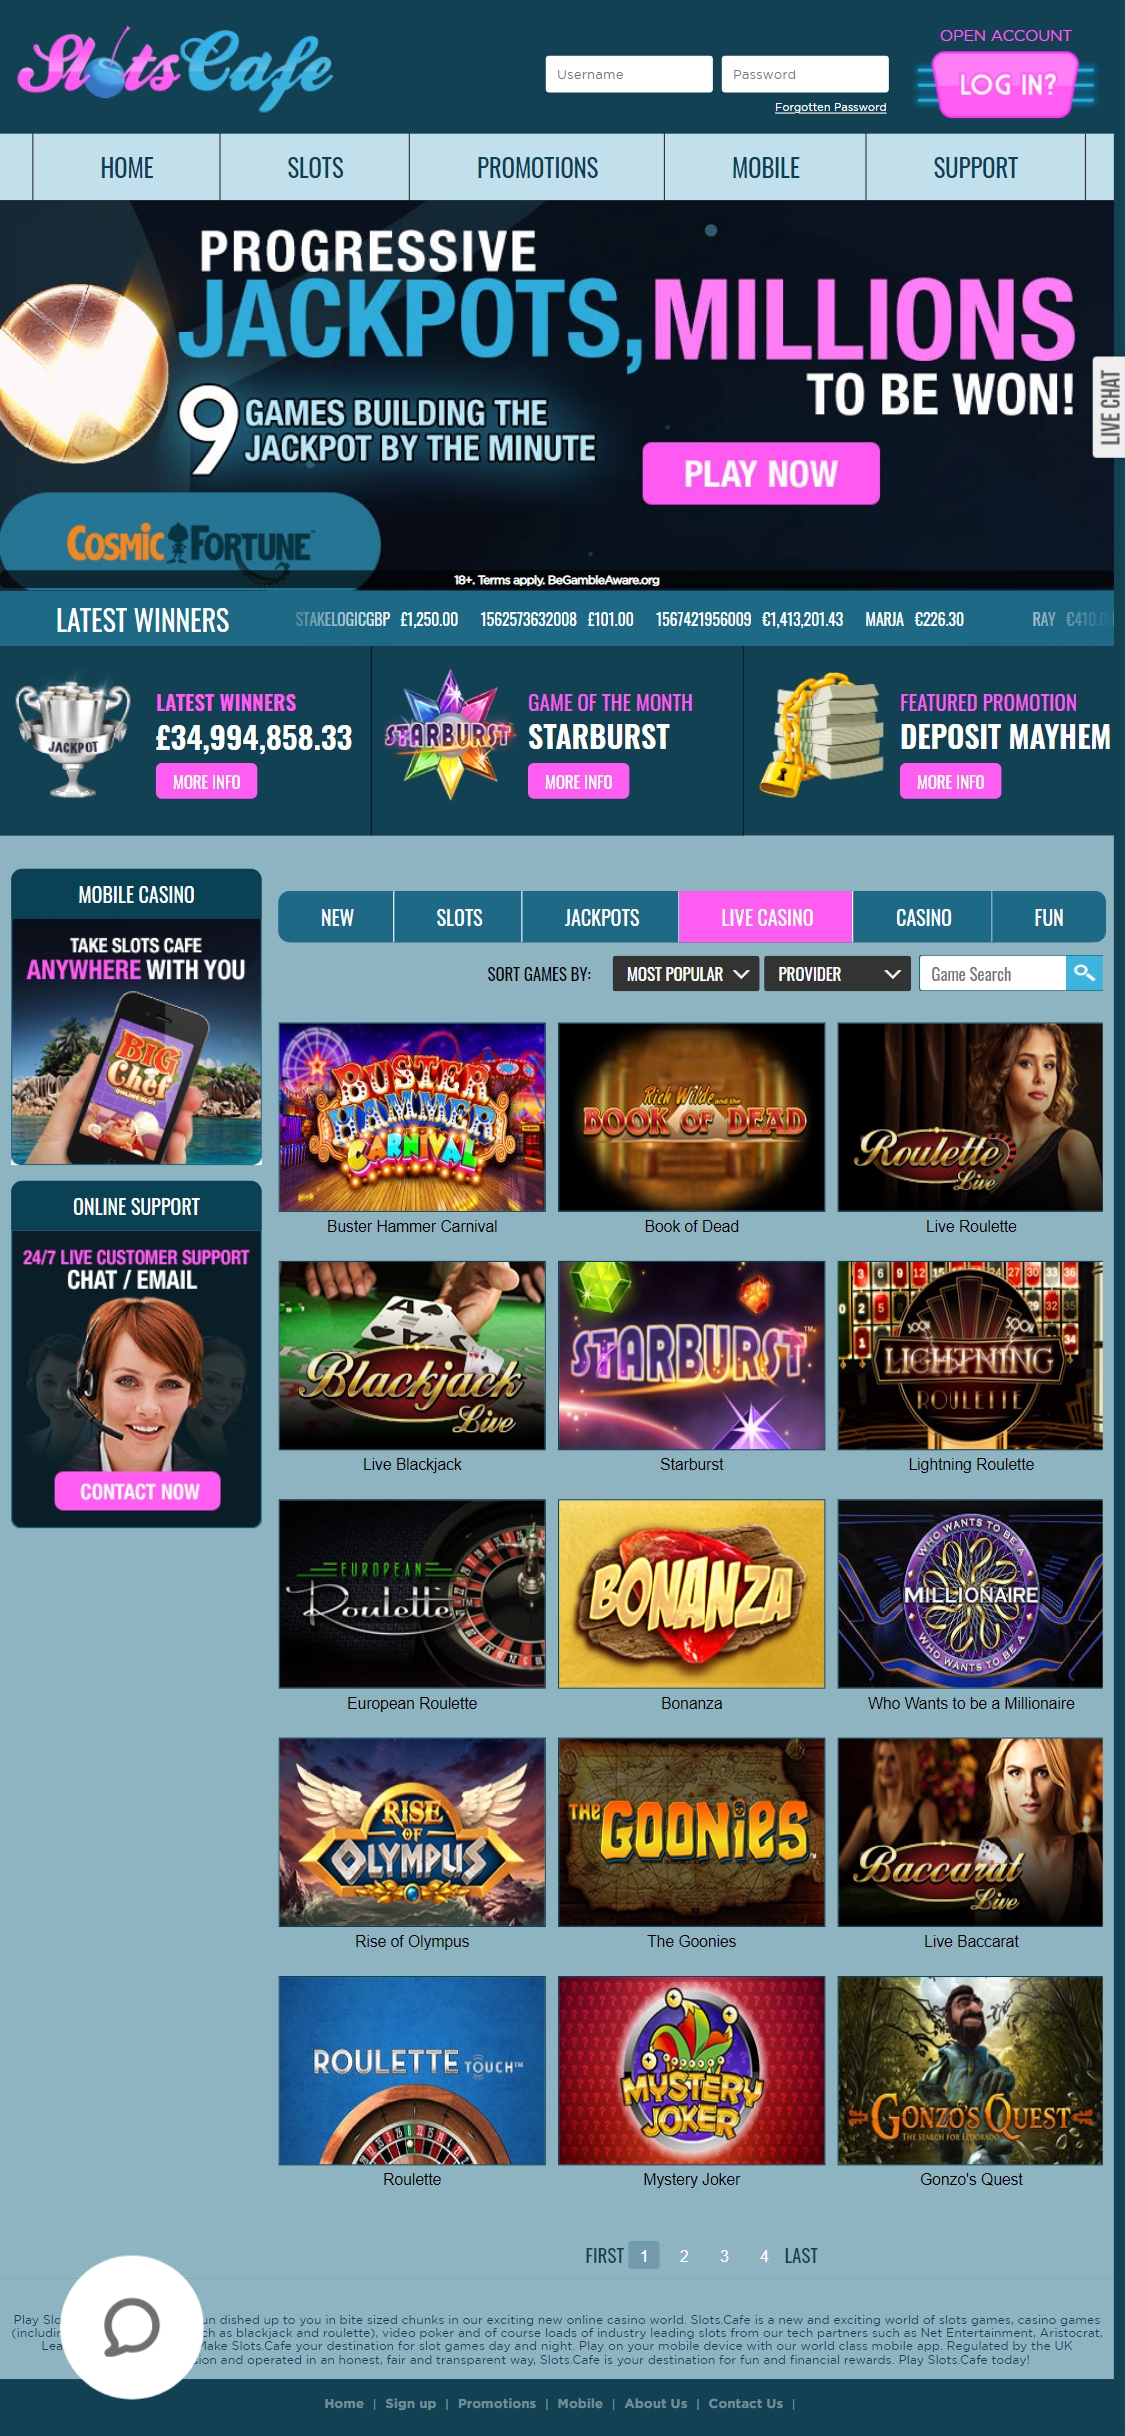 Slots Cafe Mobile Live Dealer Games Review